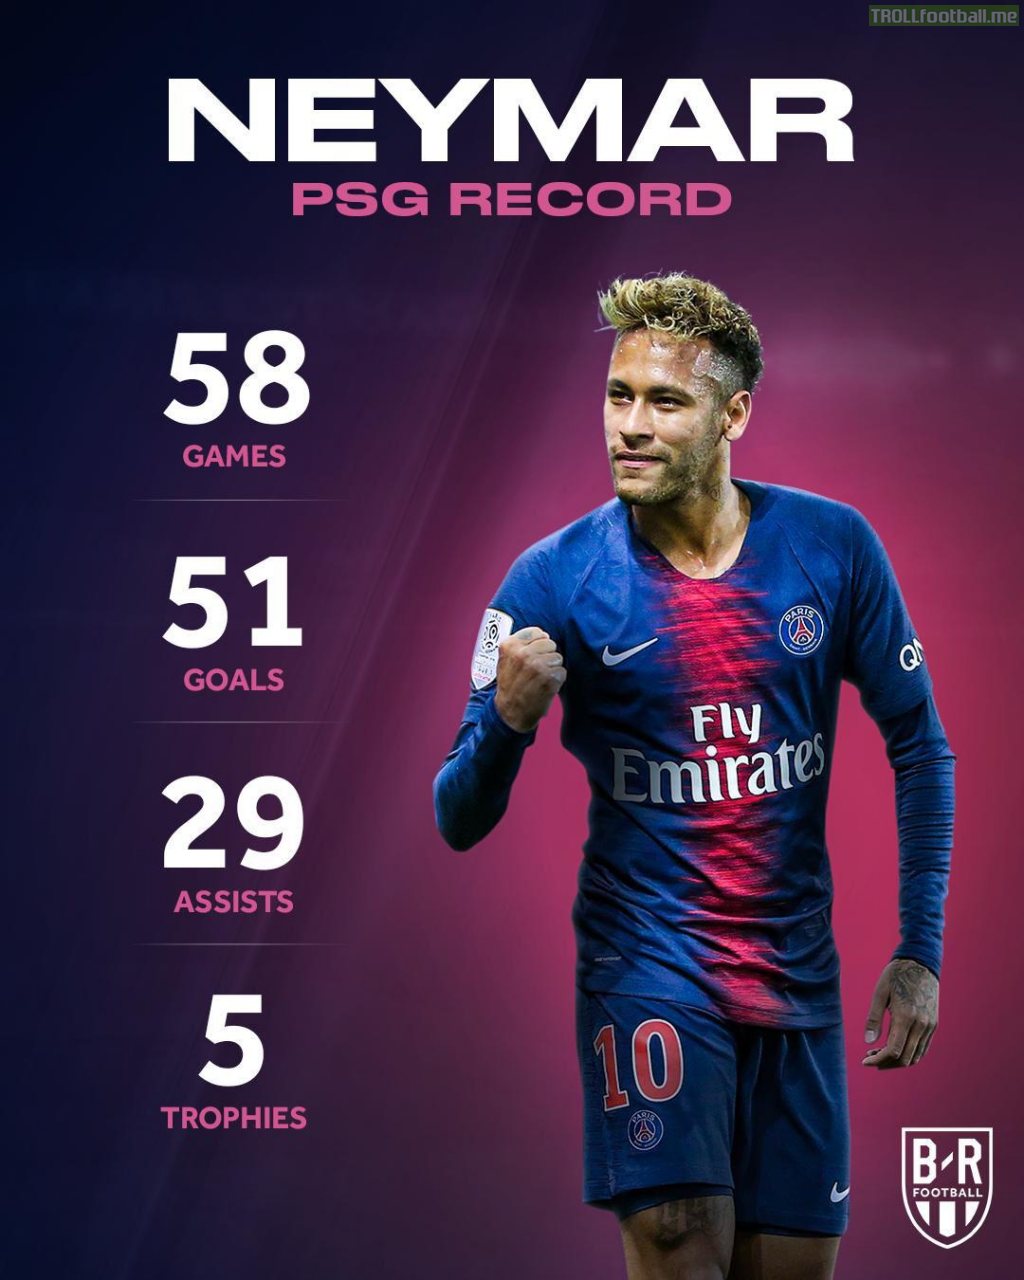 Neymar’s record at PSG